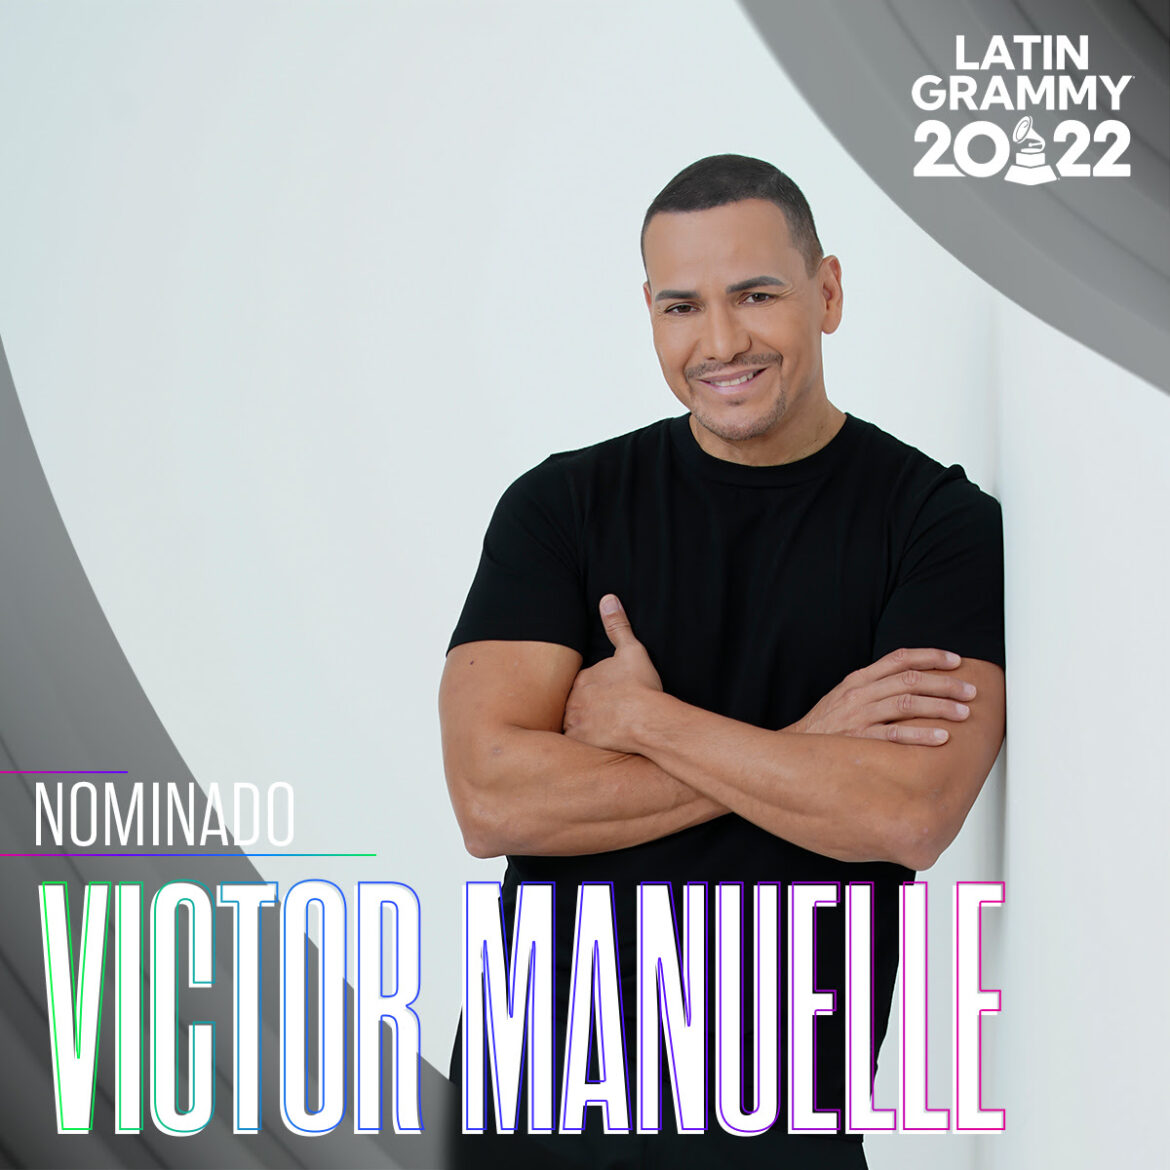 Víctor Manuelle nominado al Latin Grammy 2022 al Mejor Álbum de Salsa por Lado A Lado B